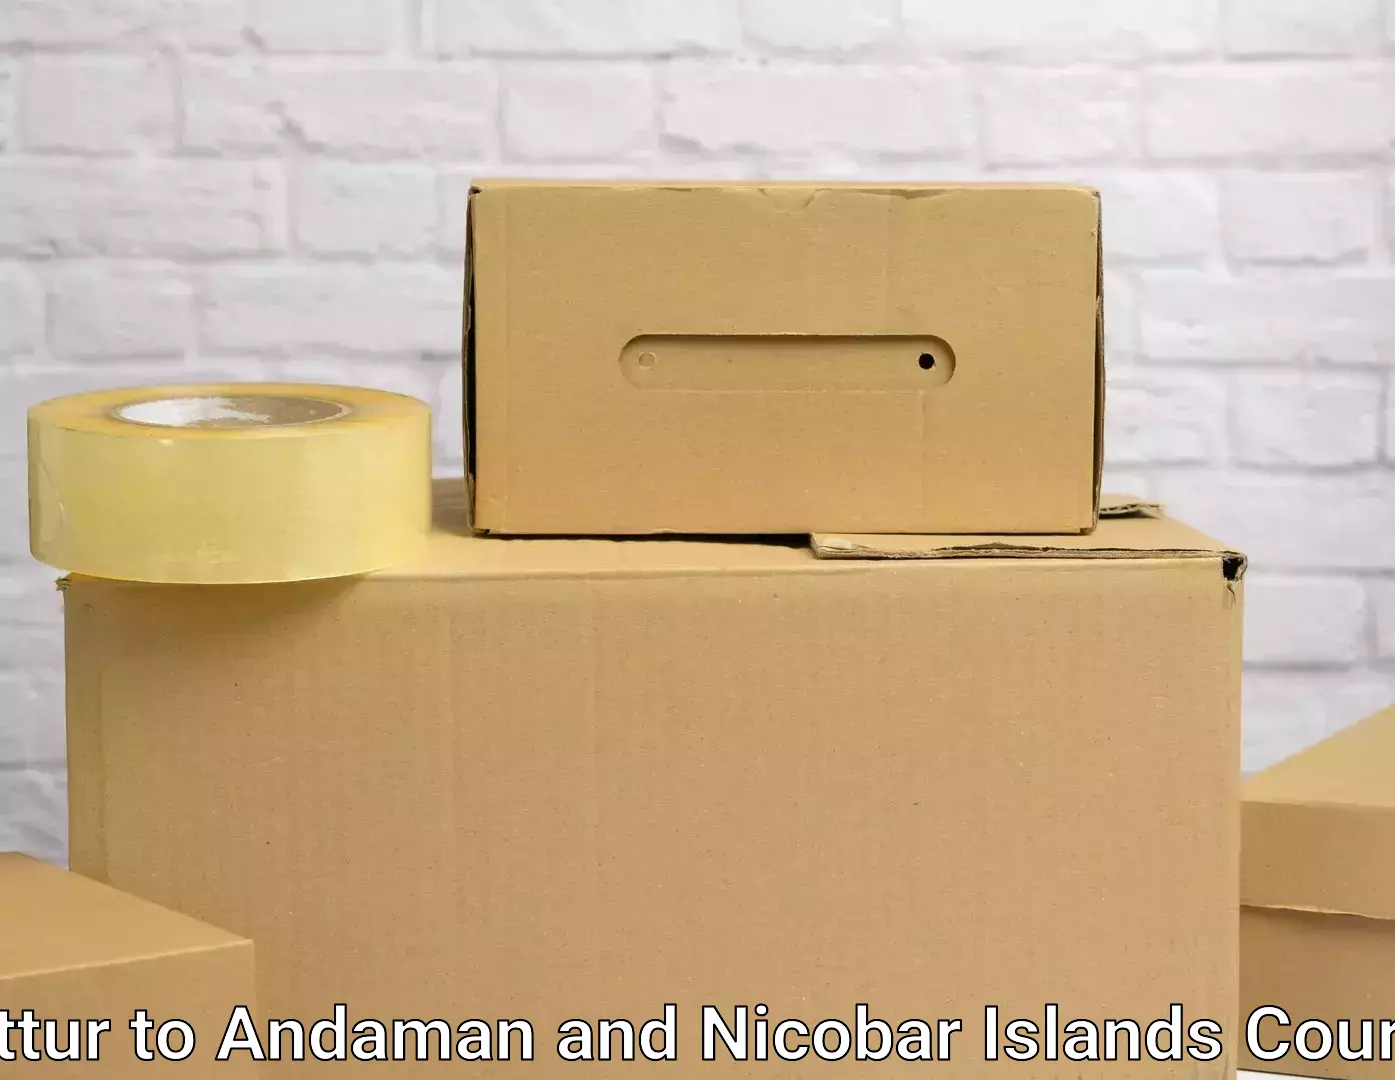 Furniture transport experts Puttur to Andaman and Nicobar Islands